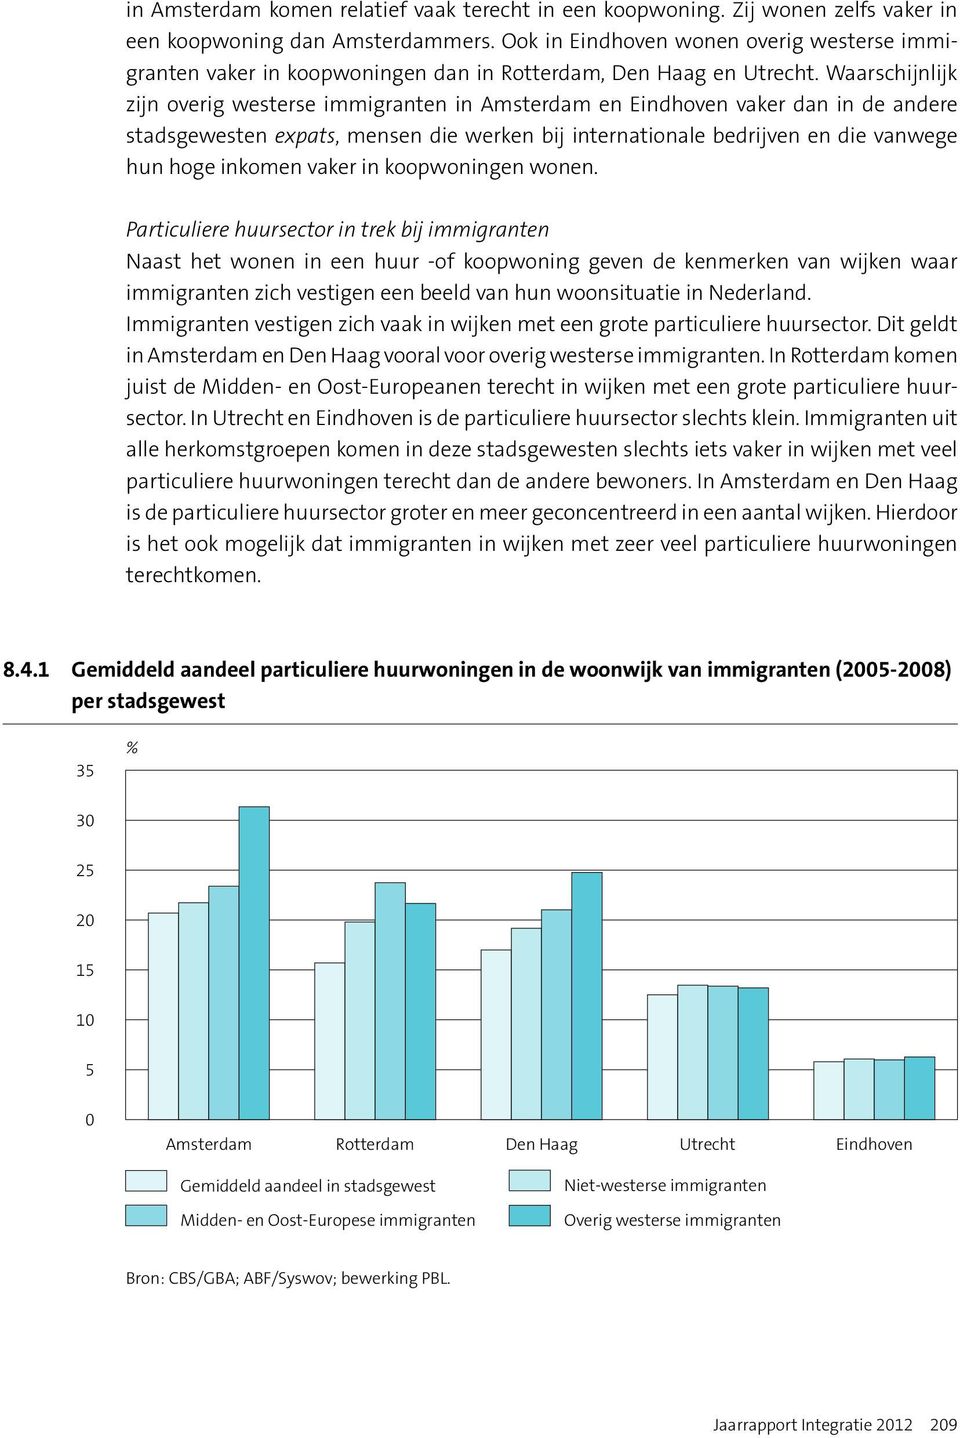 Waarschijnlijk zijn overig westerse immigranten in Amsterdam en Eindhoven vaker dan in de andere stadsgewesten expats, mensen die werken bij internationale bedrijven en die vanwege hun hoge inkomen